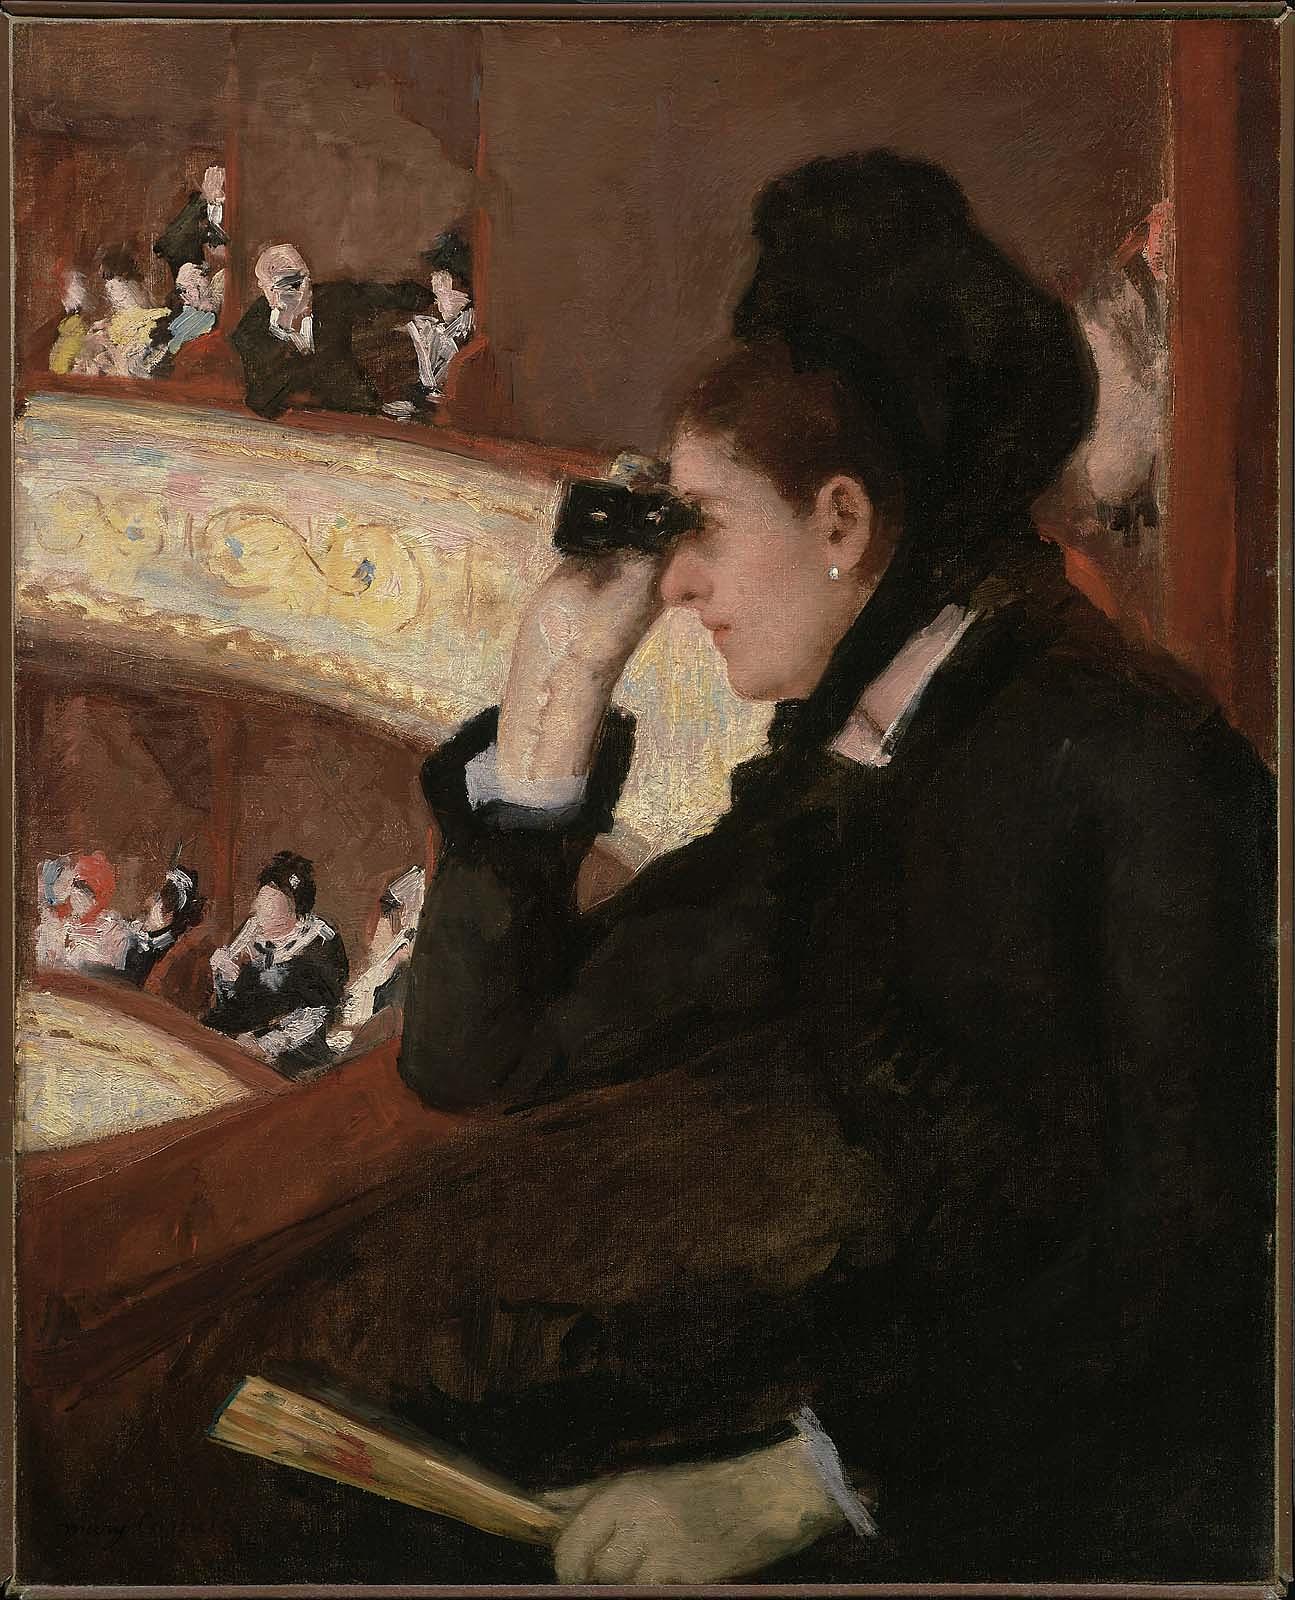 W operze by Mary Cassatt - 1878 - 81,28 x 66,04 cm 